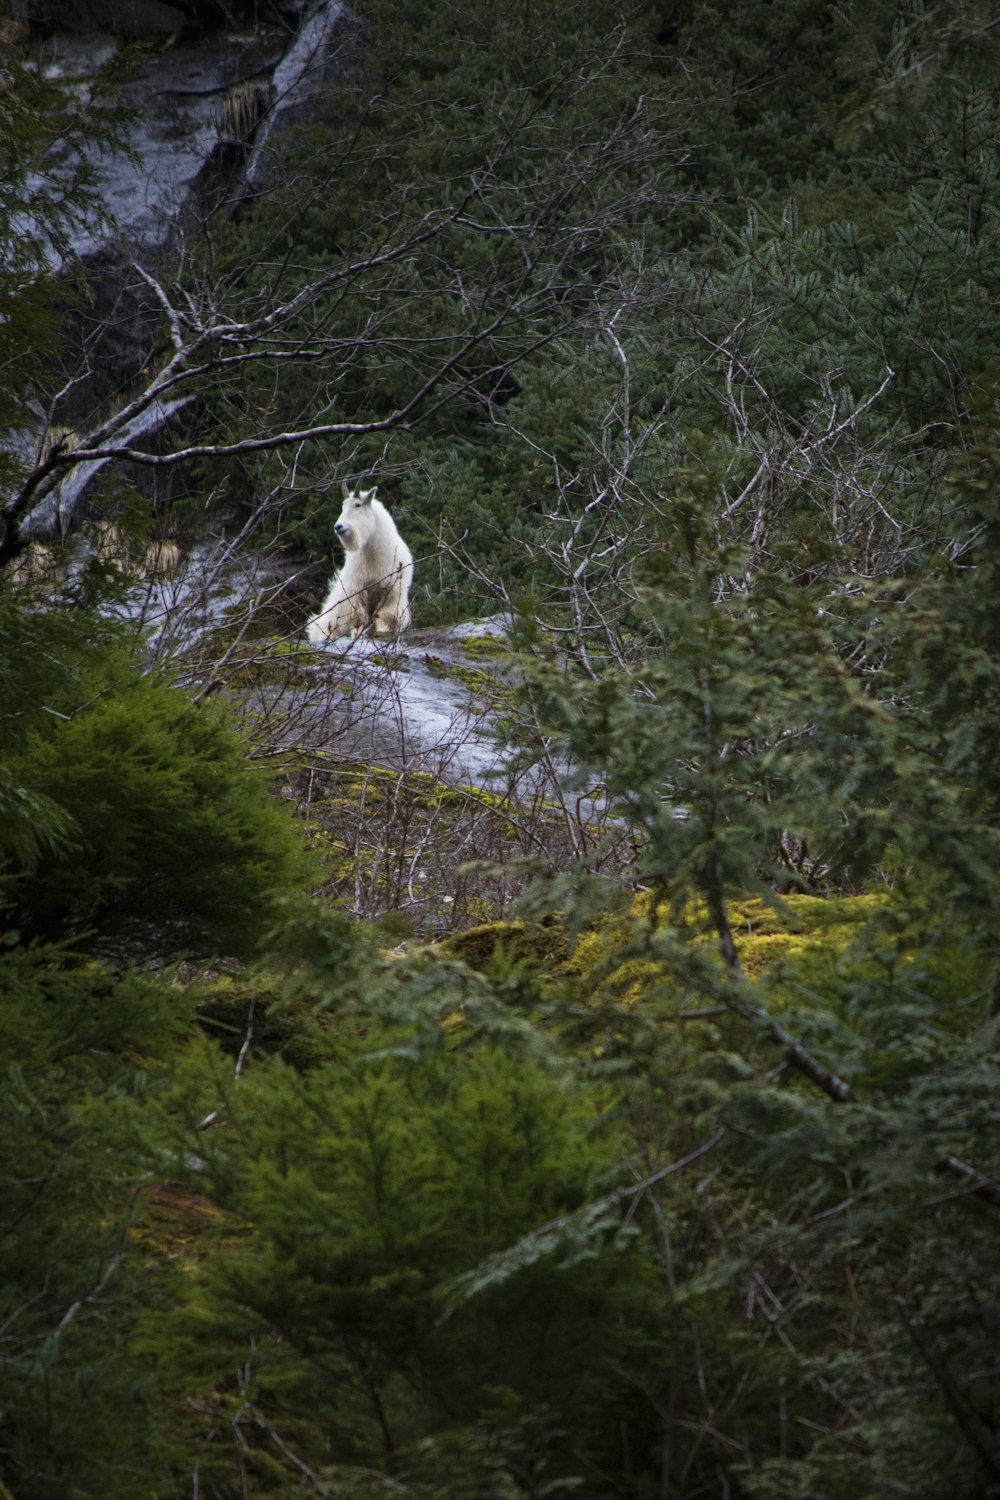 a white polar bear walking through a forest